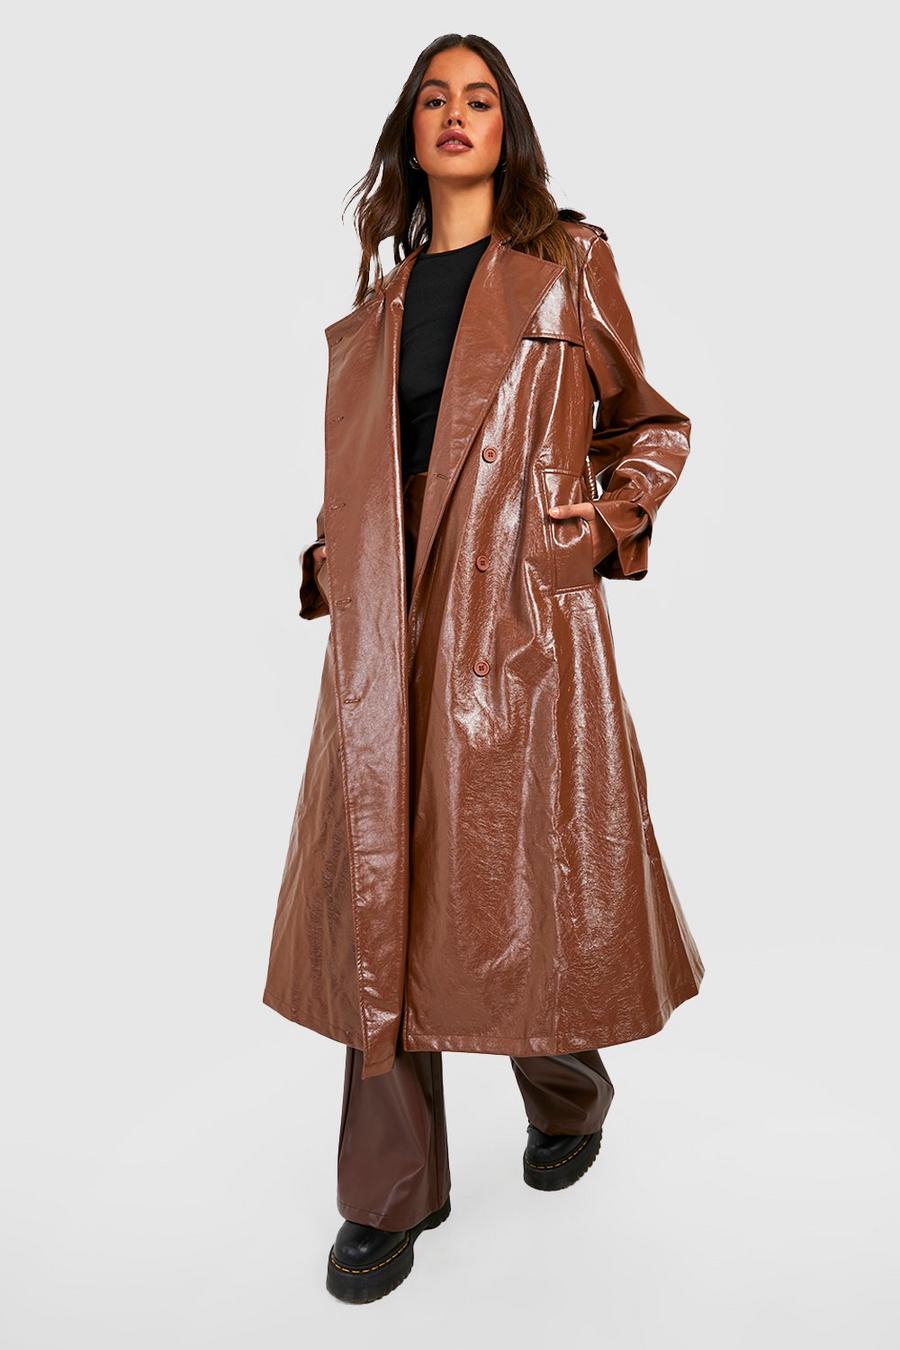 Chocolate marron Vinyl Oversized Trench Coat